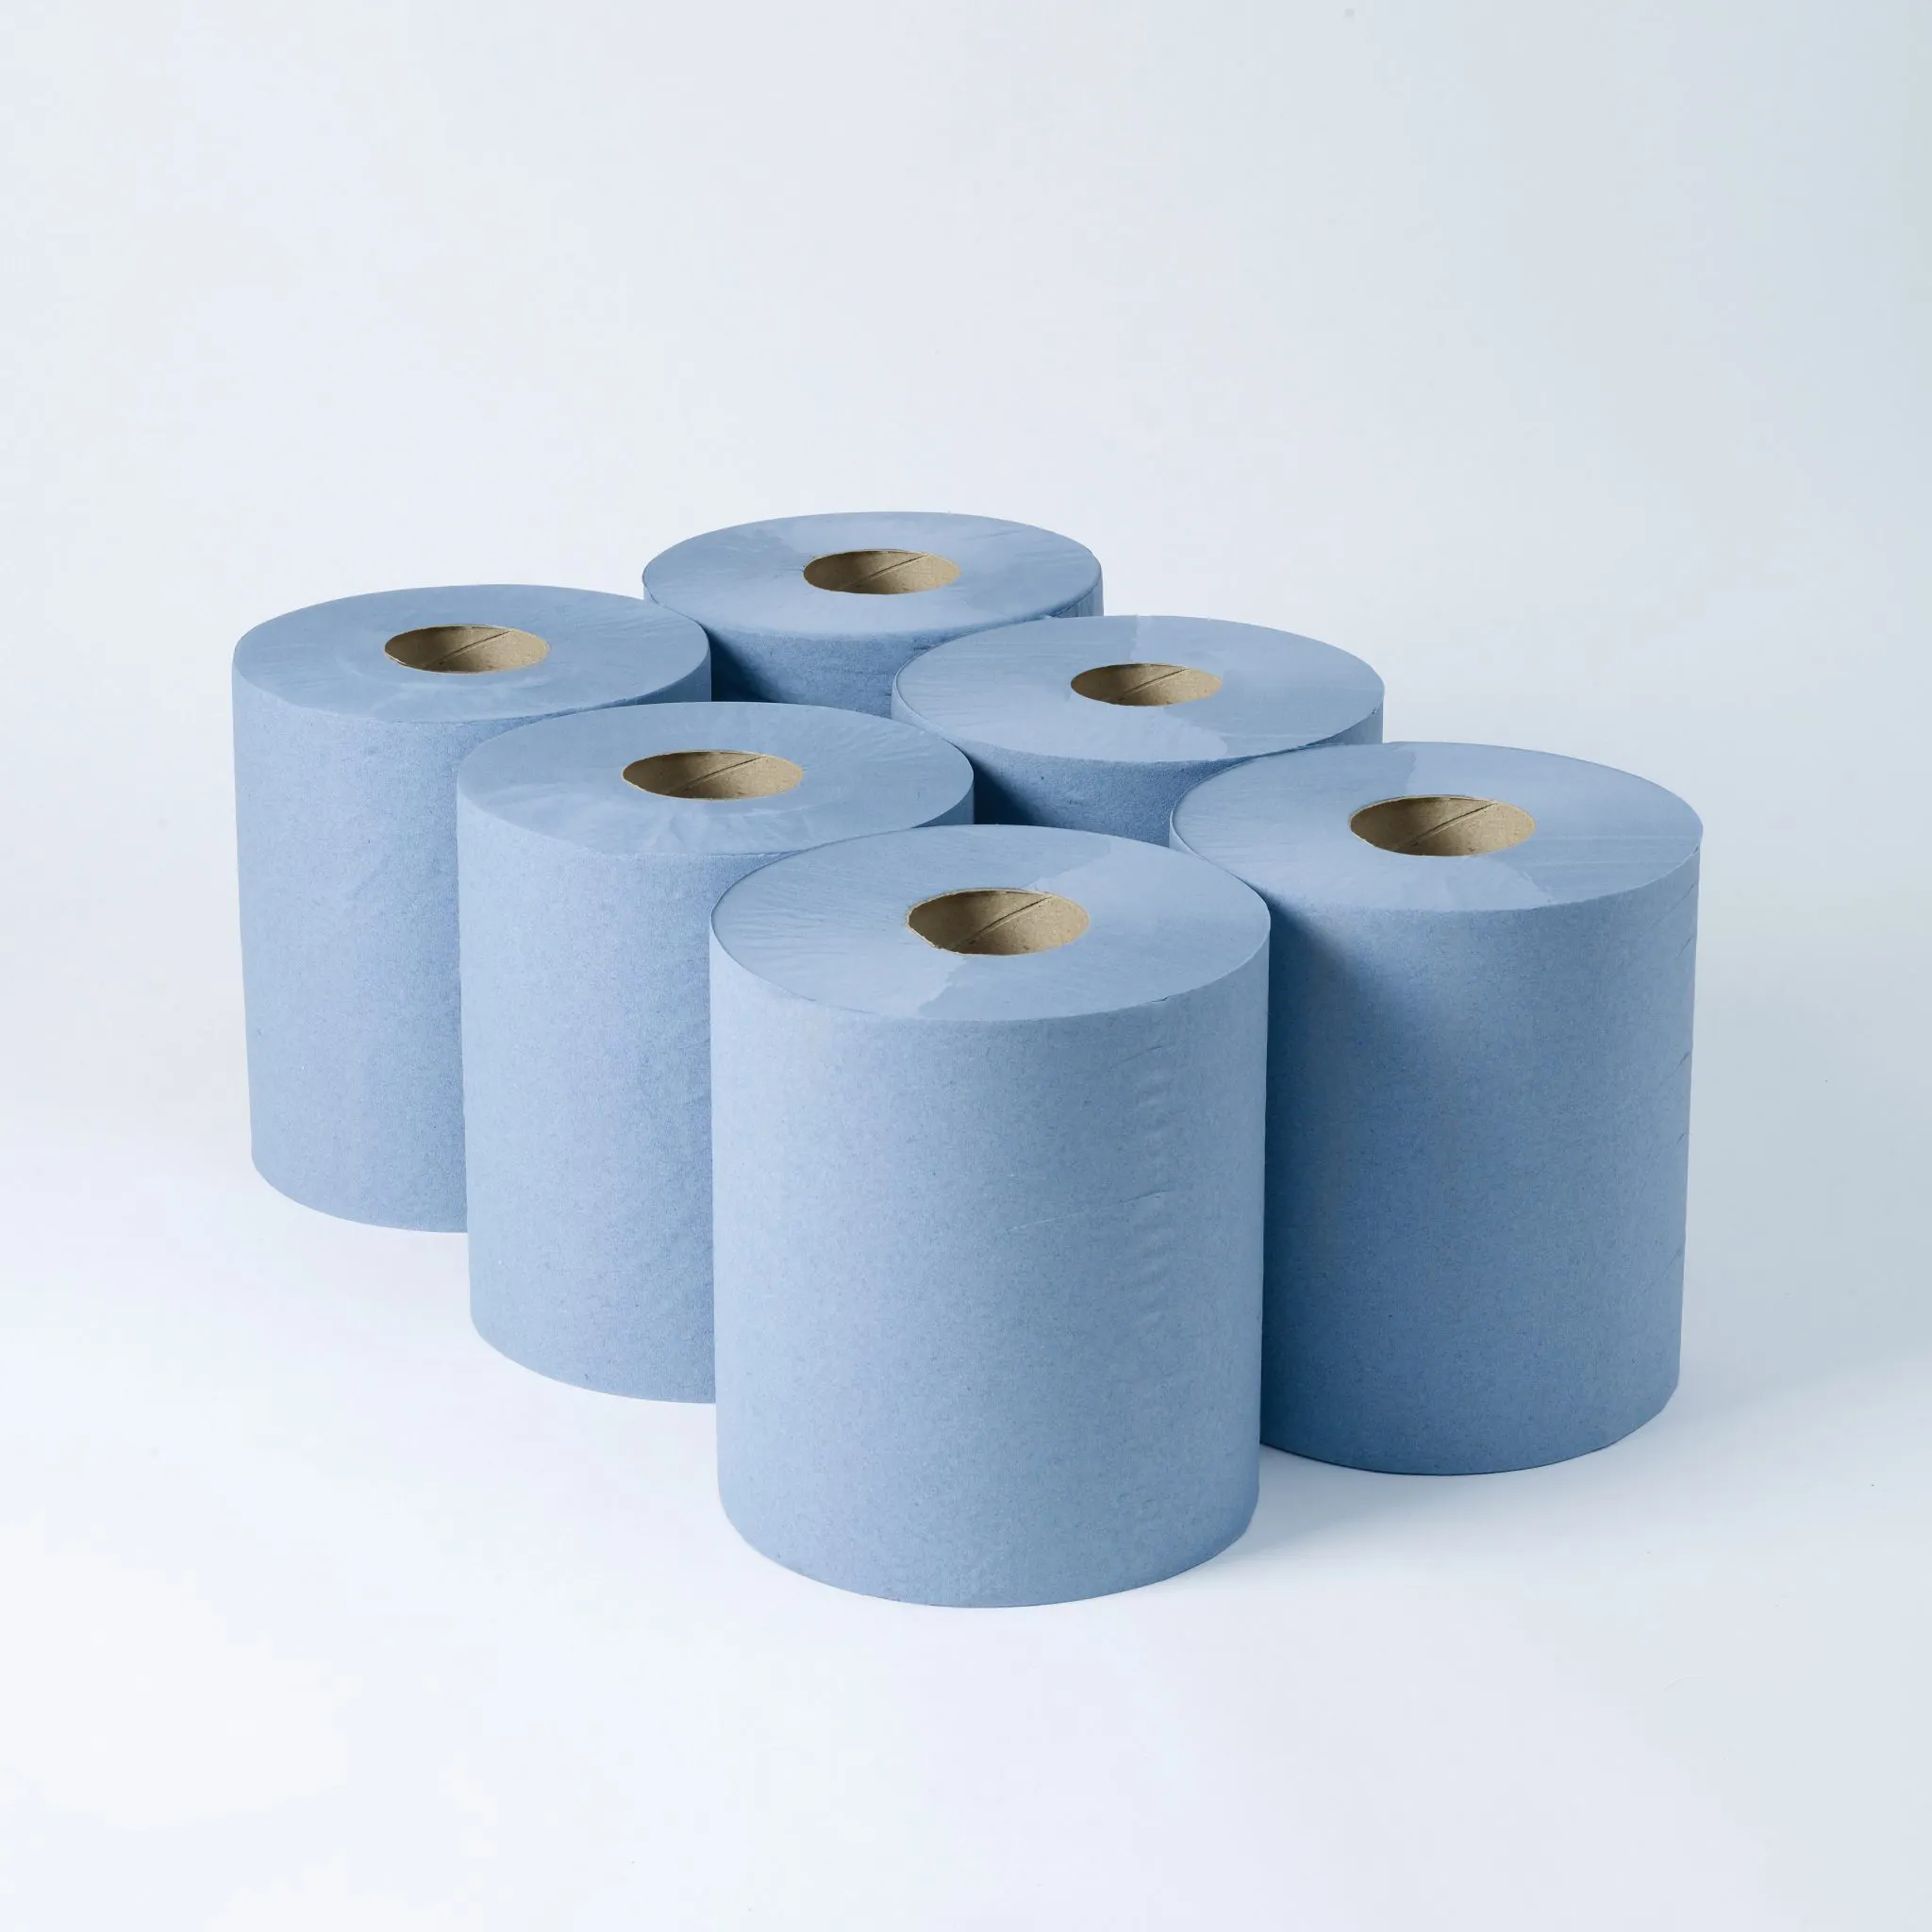 Оптовая продажа, высококачественное ультравпитывающее одноразовое бумажное полотенце голубого цвета